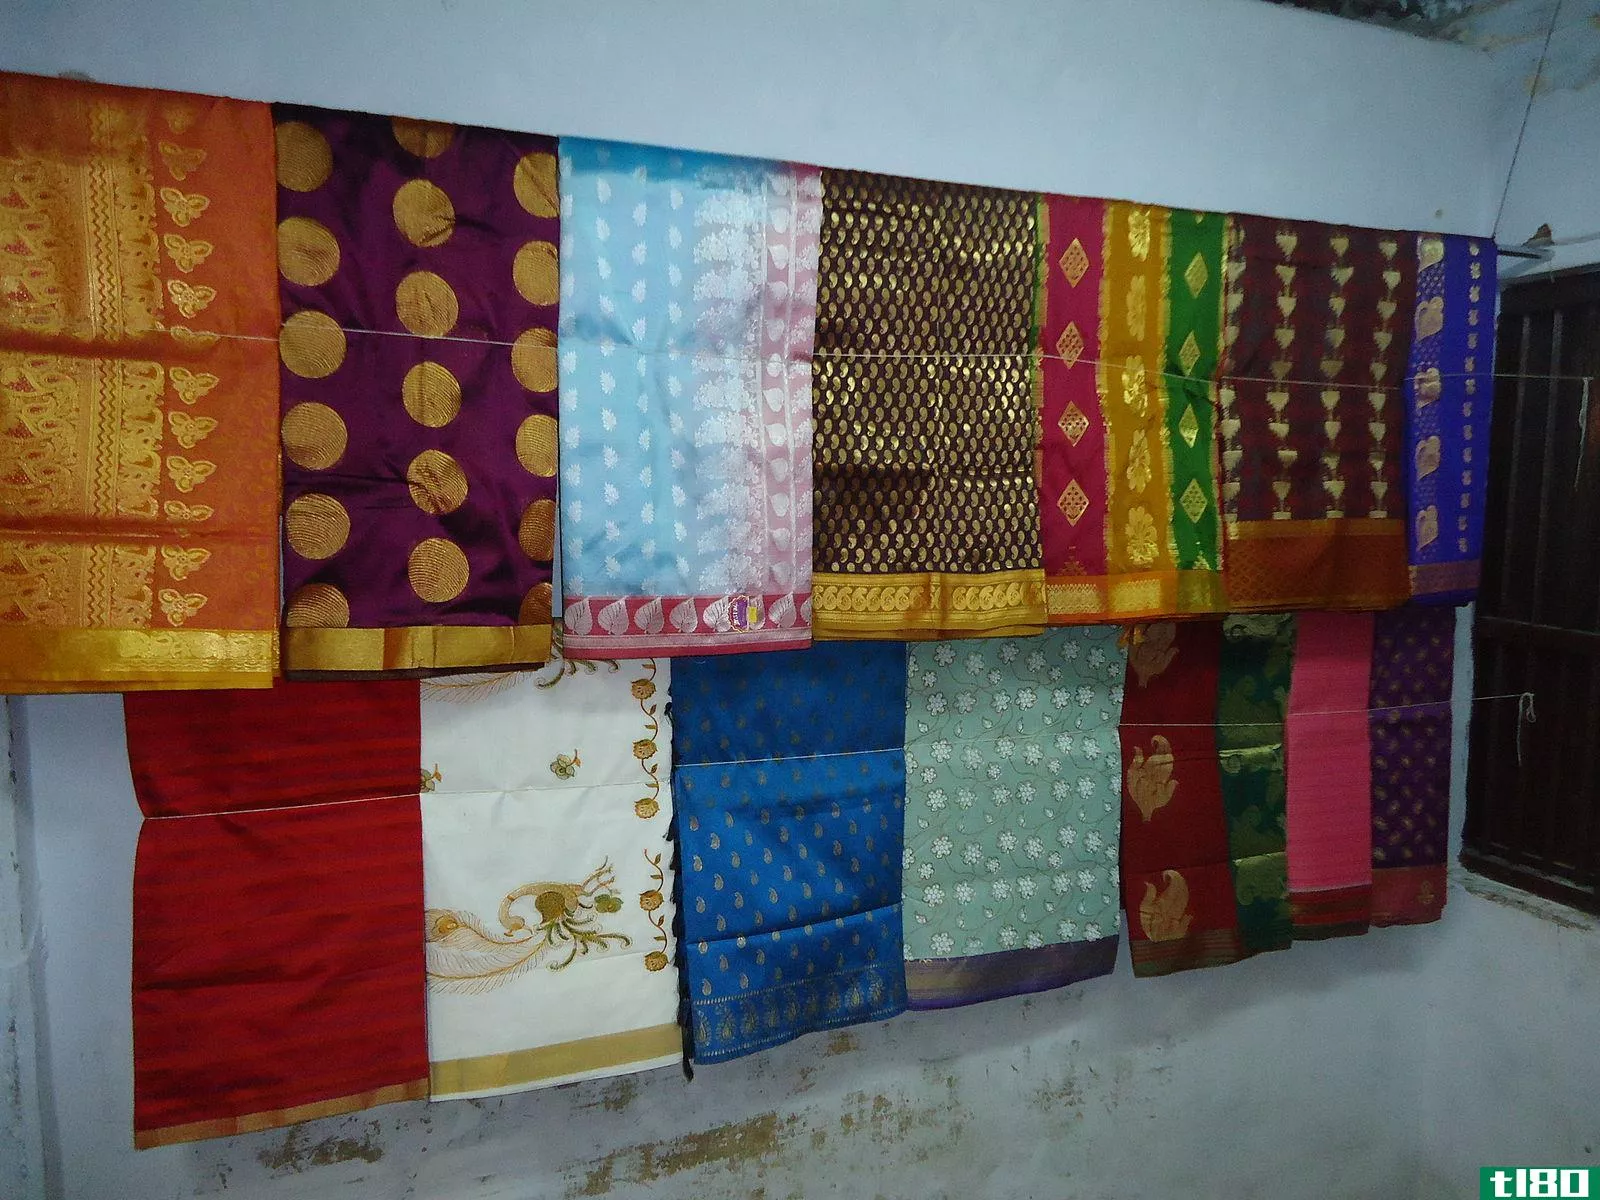 乌帕达丝绸(uppada silk)和坎奇普拉姆丝绸(kanchipuram silk)的区别